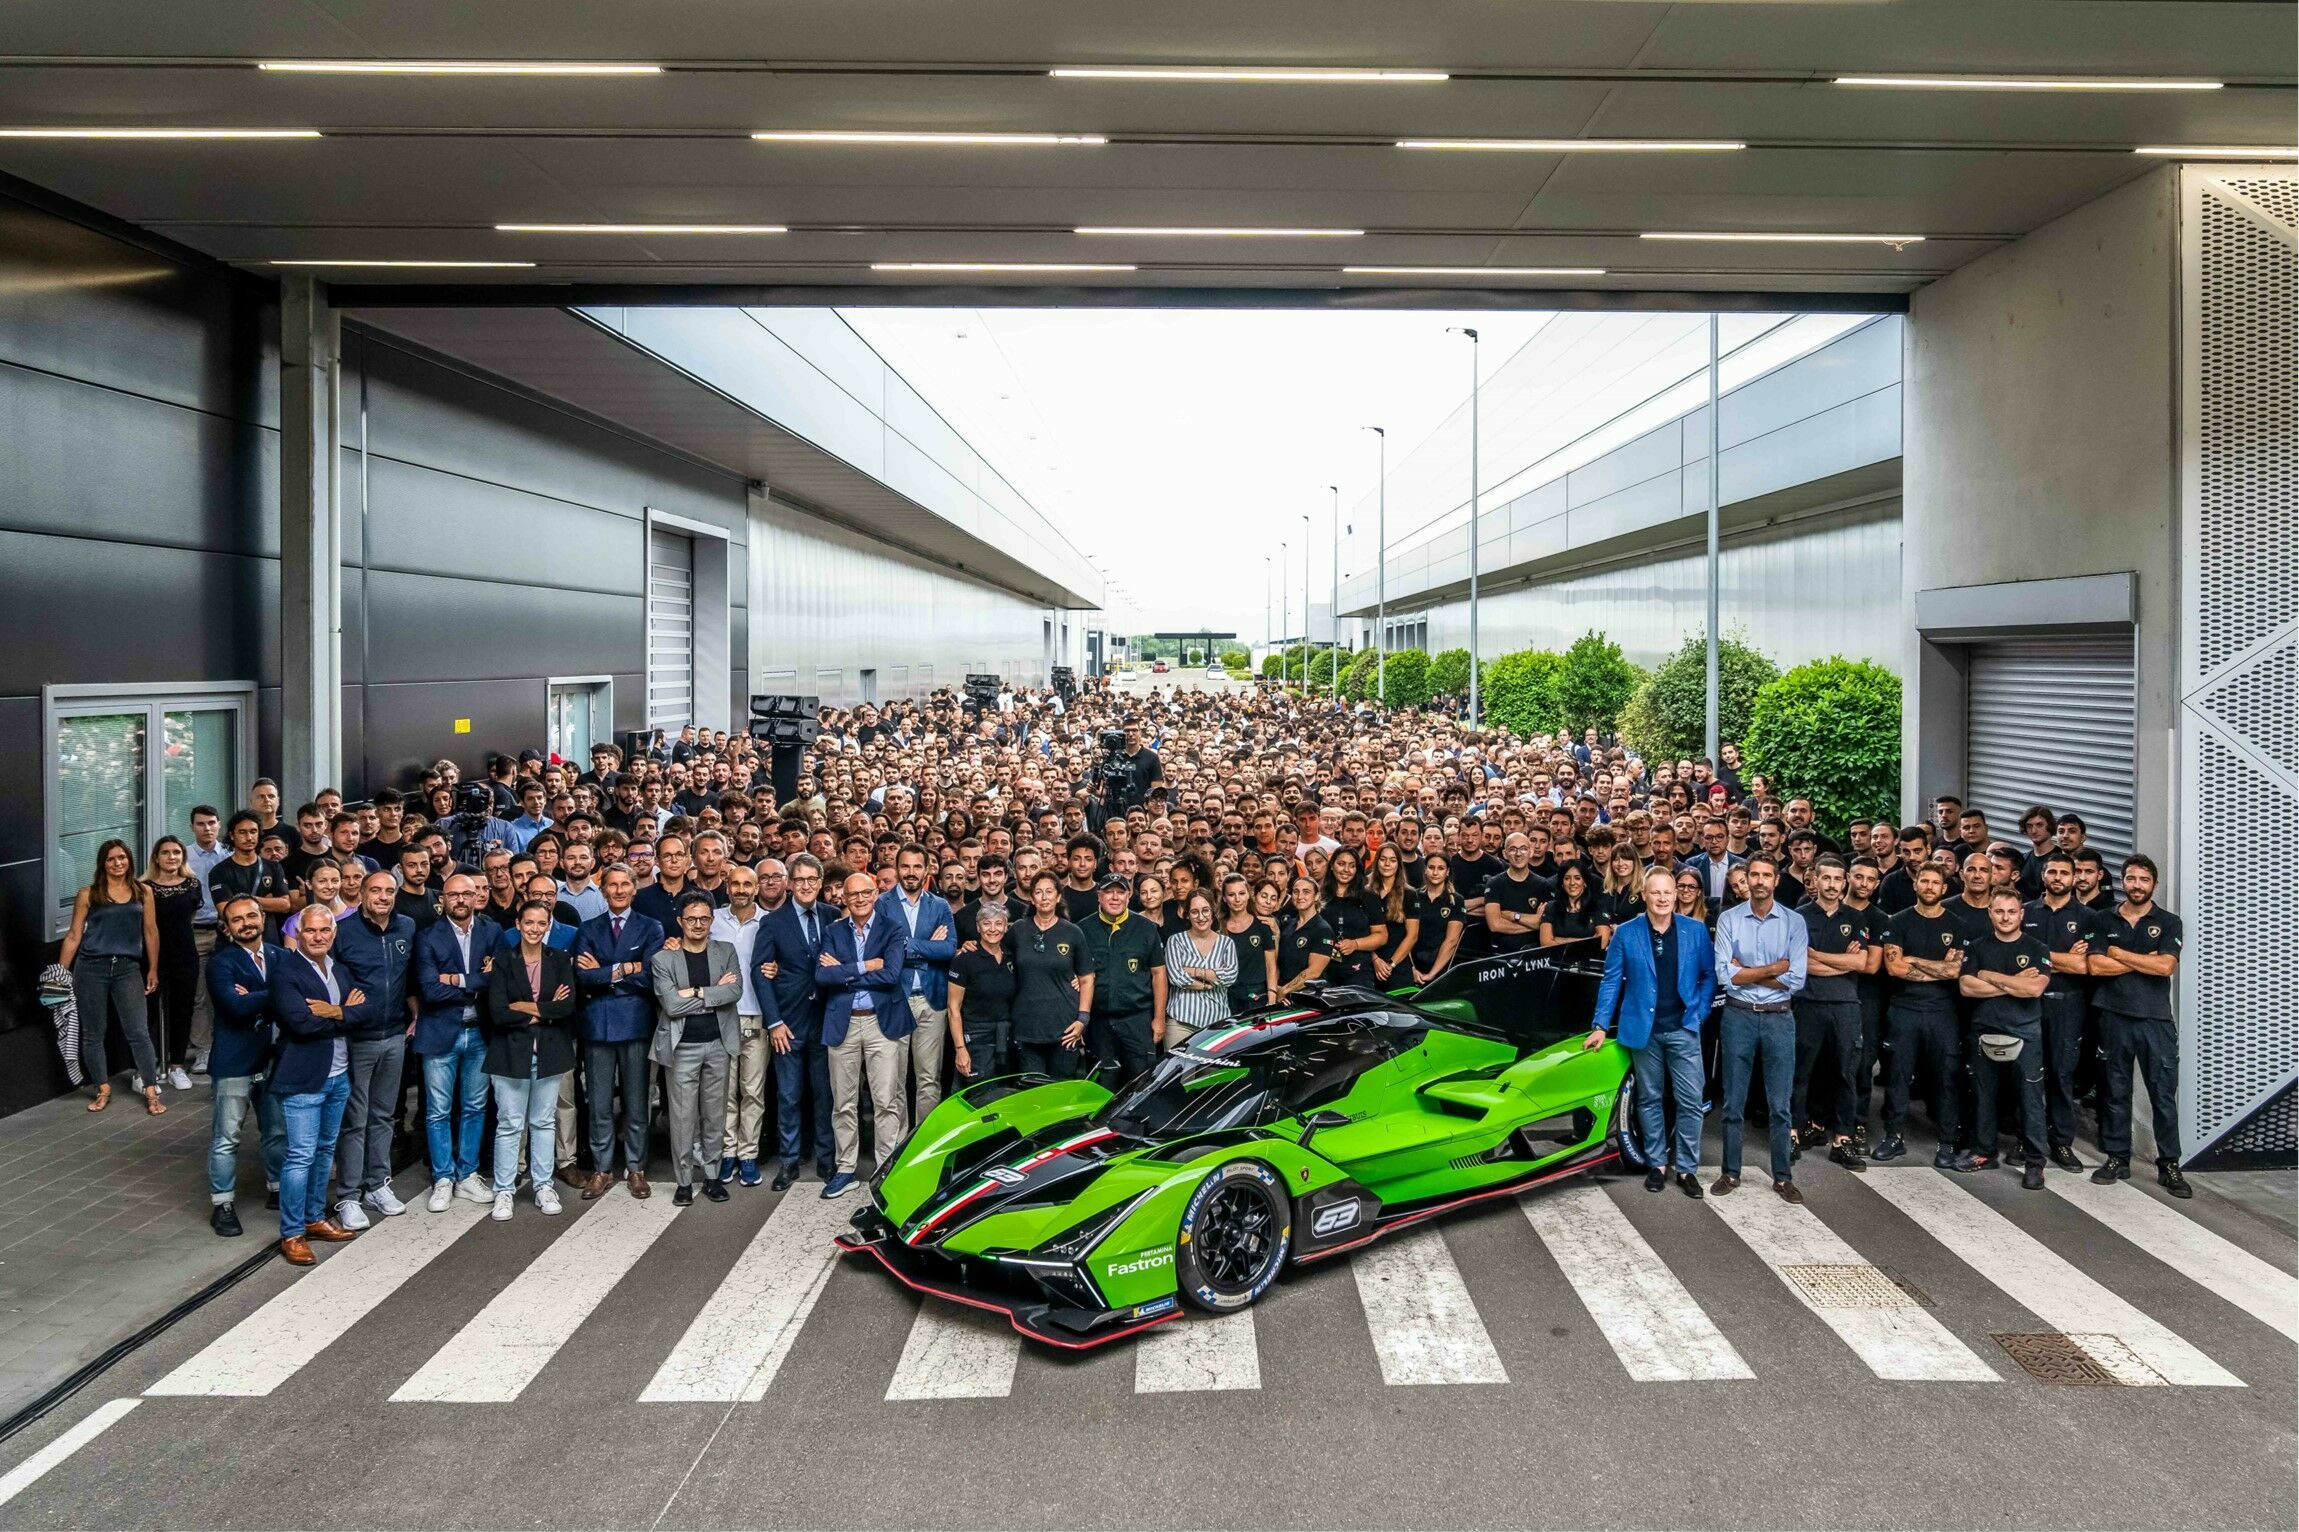 Historischer Meilenstein für Automobili Lamborghini mit über 10.000 ausgelieferten Fahrzeugen